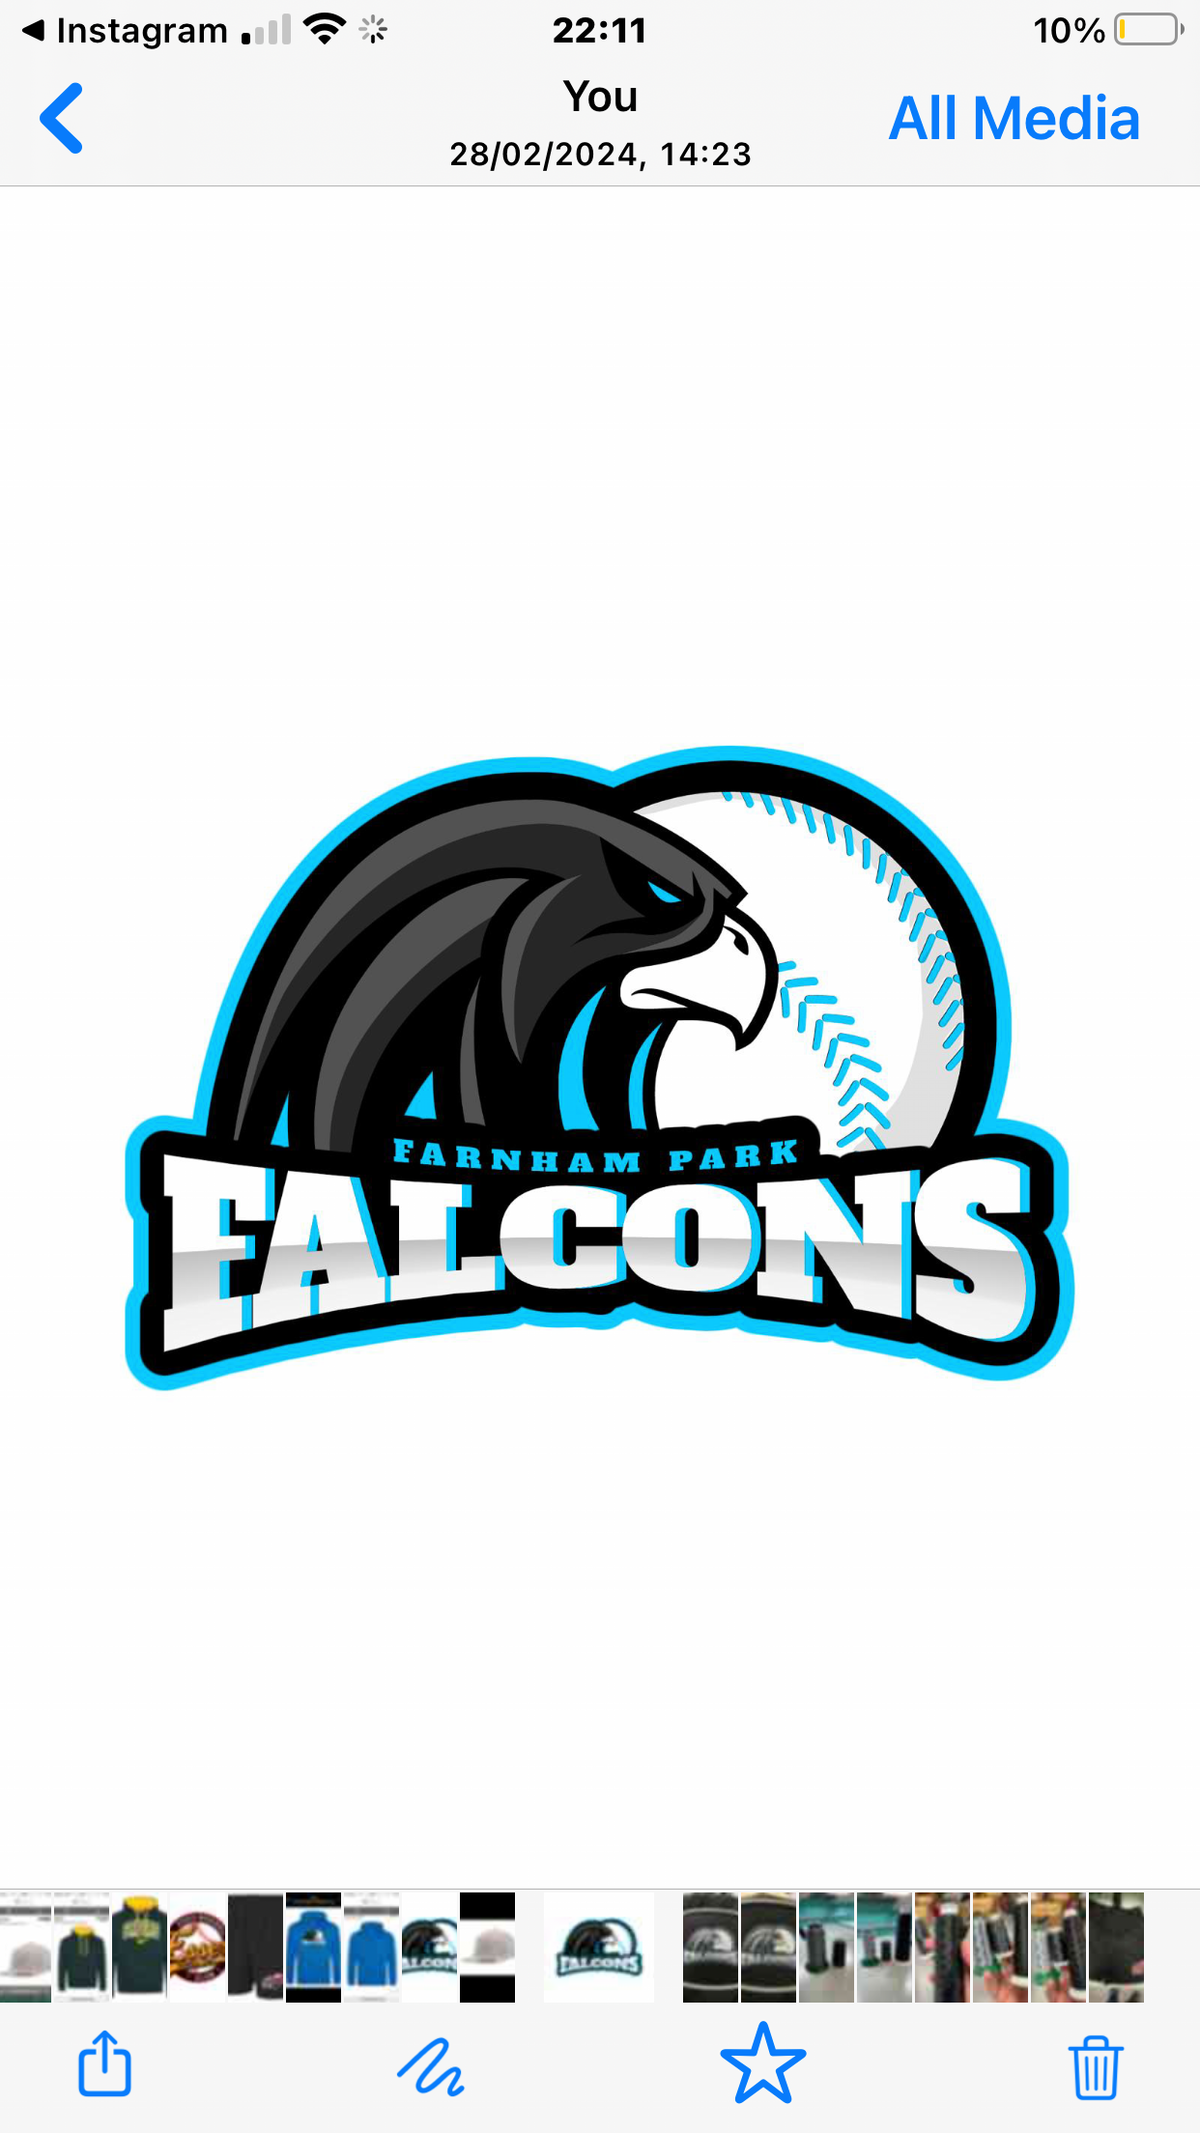 Falcons Team Store